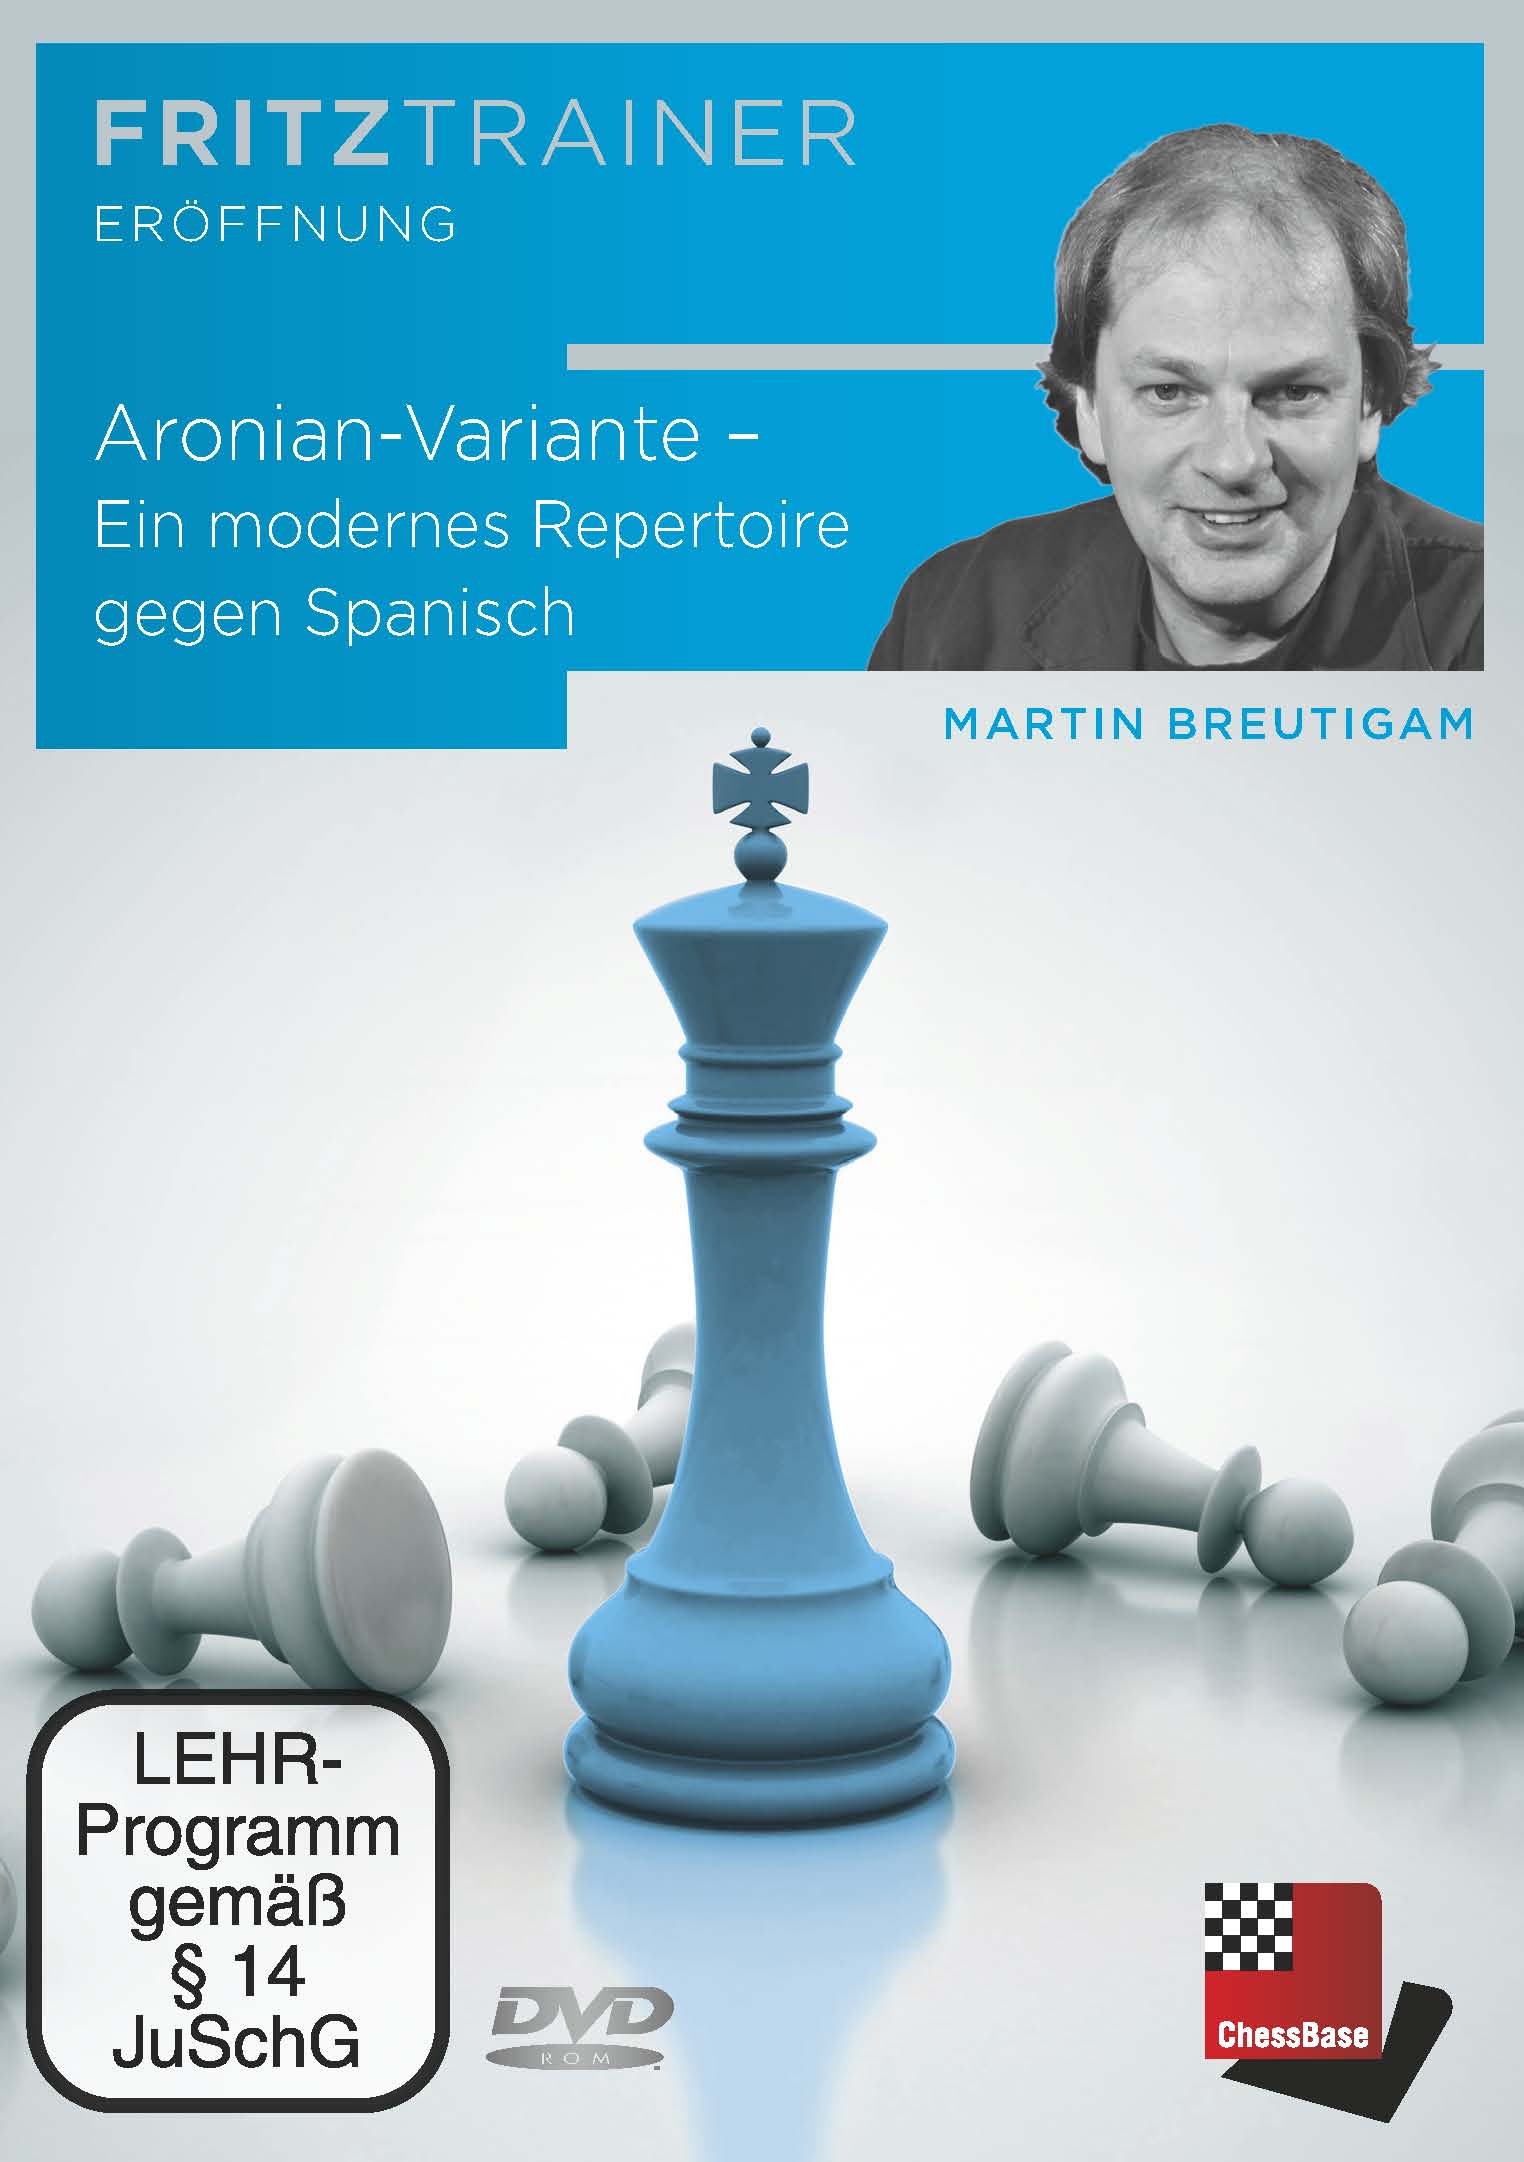 Aronian-Variante - Ein modernes Repertoire gegen Spanisch